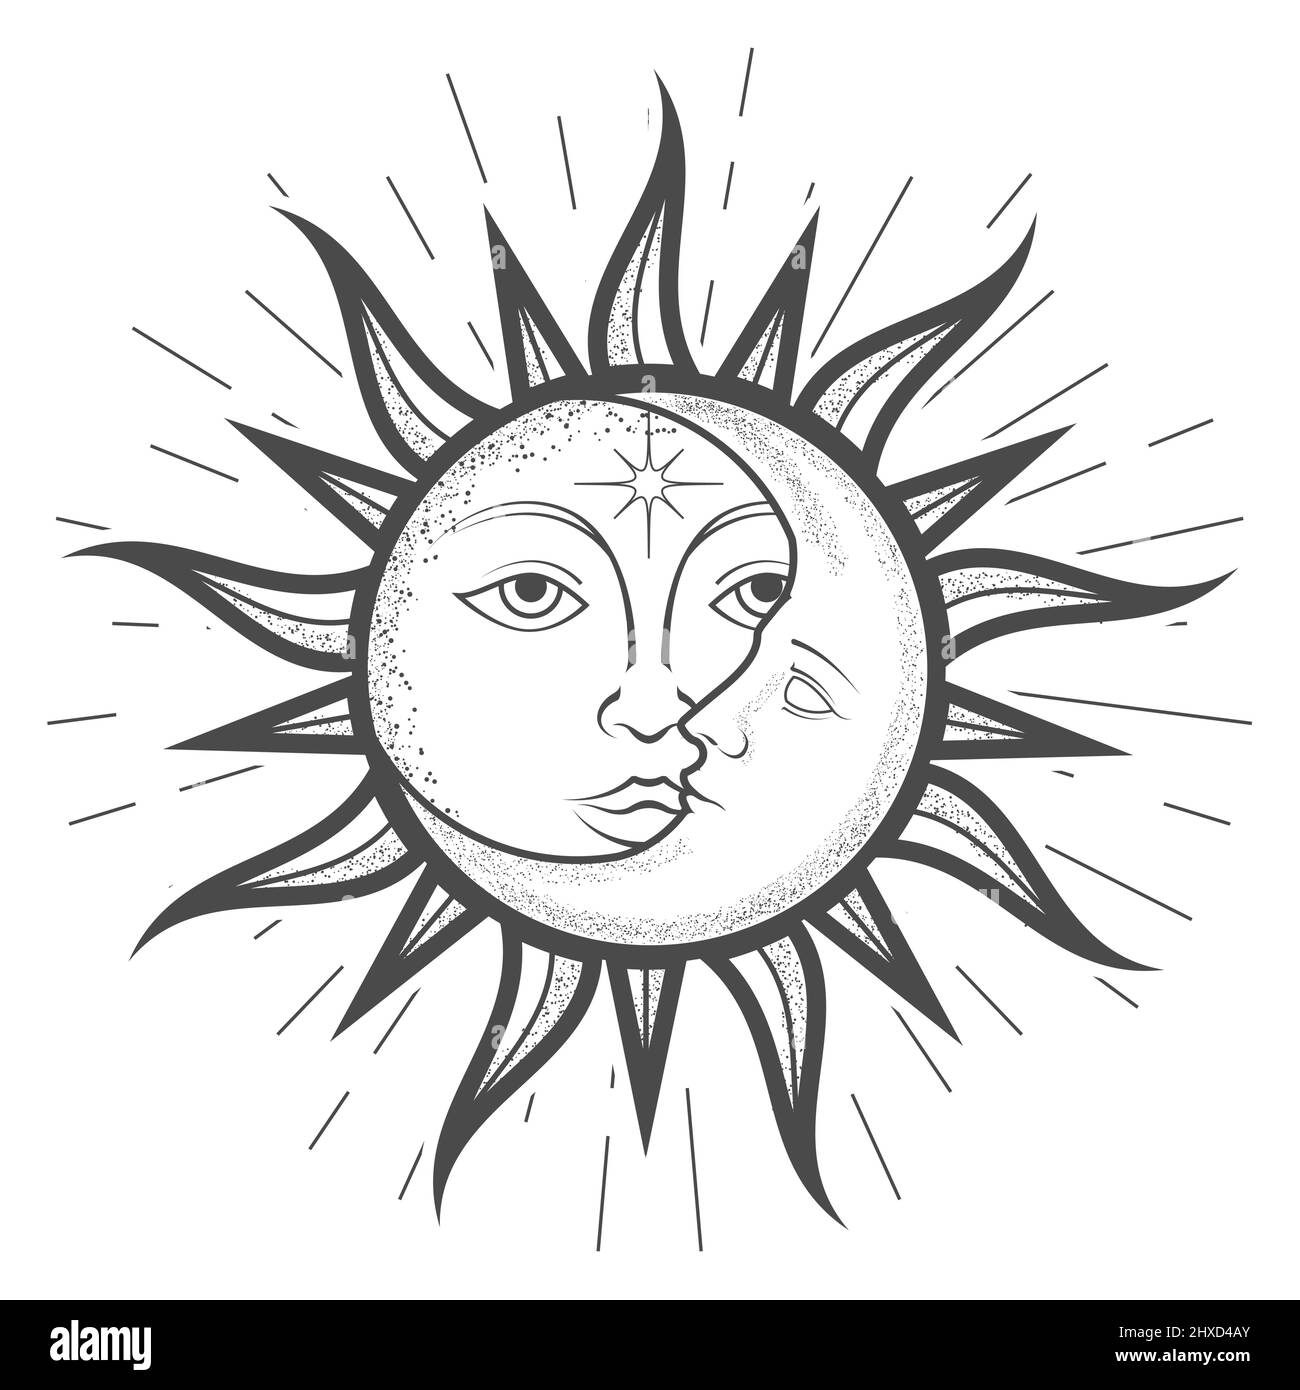 Luna a mezzaluna dentro il sole con un volto, astrologia magica e alchimia celeste, segno zodiacale, tarocchi, dispositivo dell'universo, simbolo esoterico, vettore Illustrazione Vettoriale